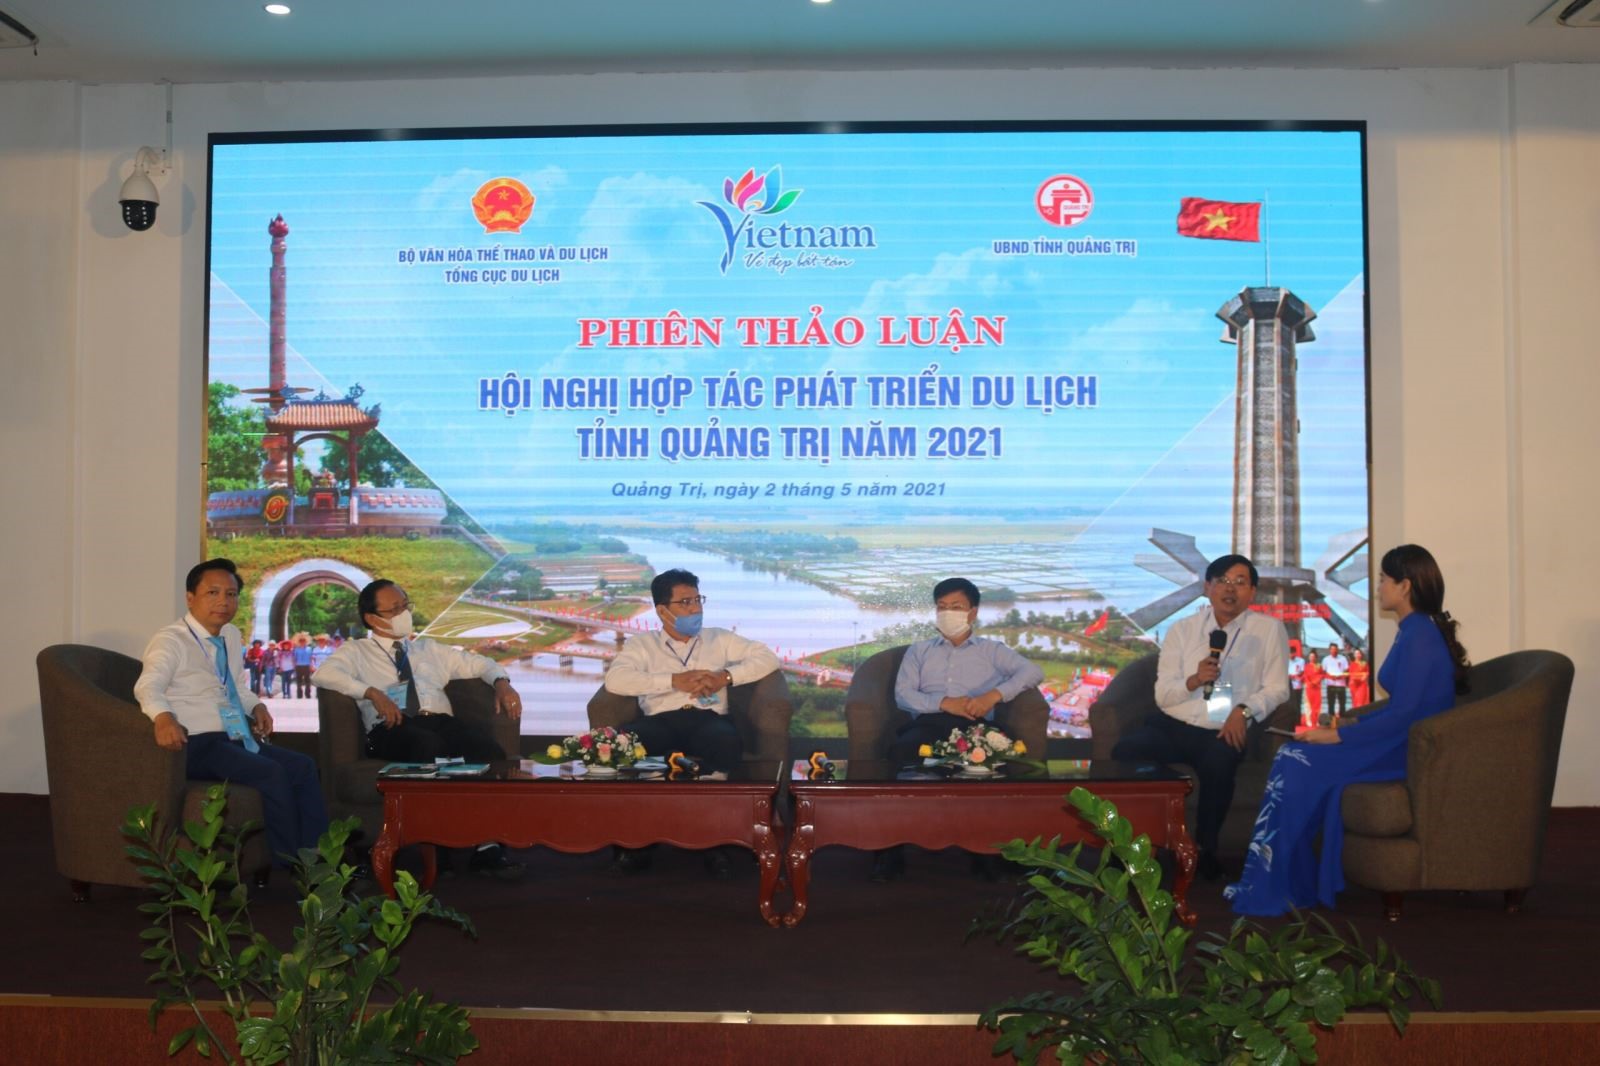 Lễ trao biên bản ghi nhớ hợp tác phát triển du lịch tỉnh Quảng Trị giữa các doanh nghiệp tháng 5/2021